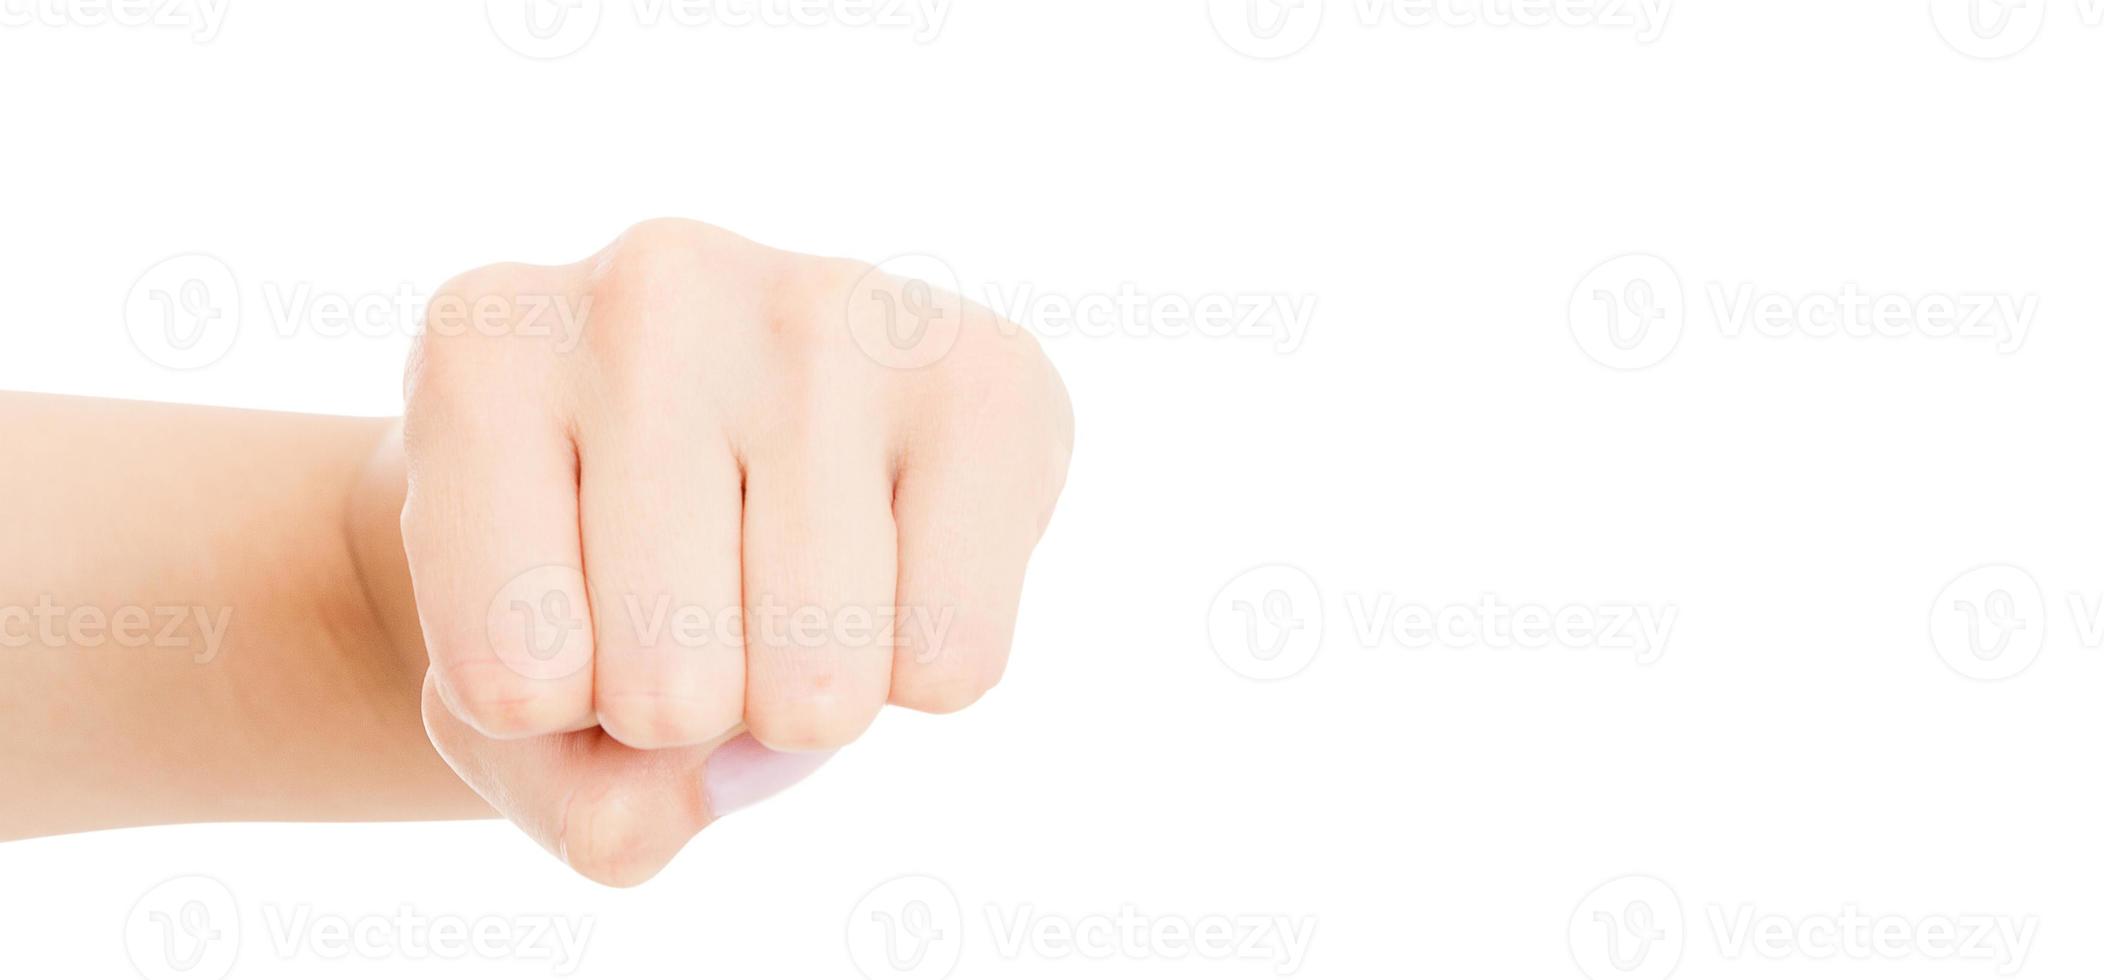 Hand gest. kvinna knuten näve, redo att slå, isolerad på vitt, närbild, kopieringsutrymme, aktivitetskoncept, feminism foto